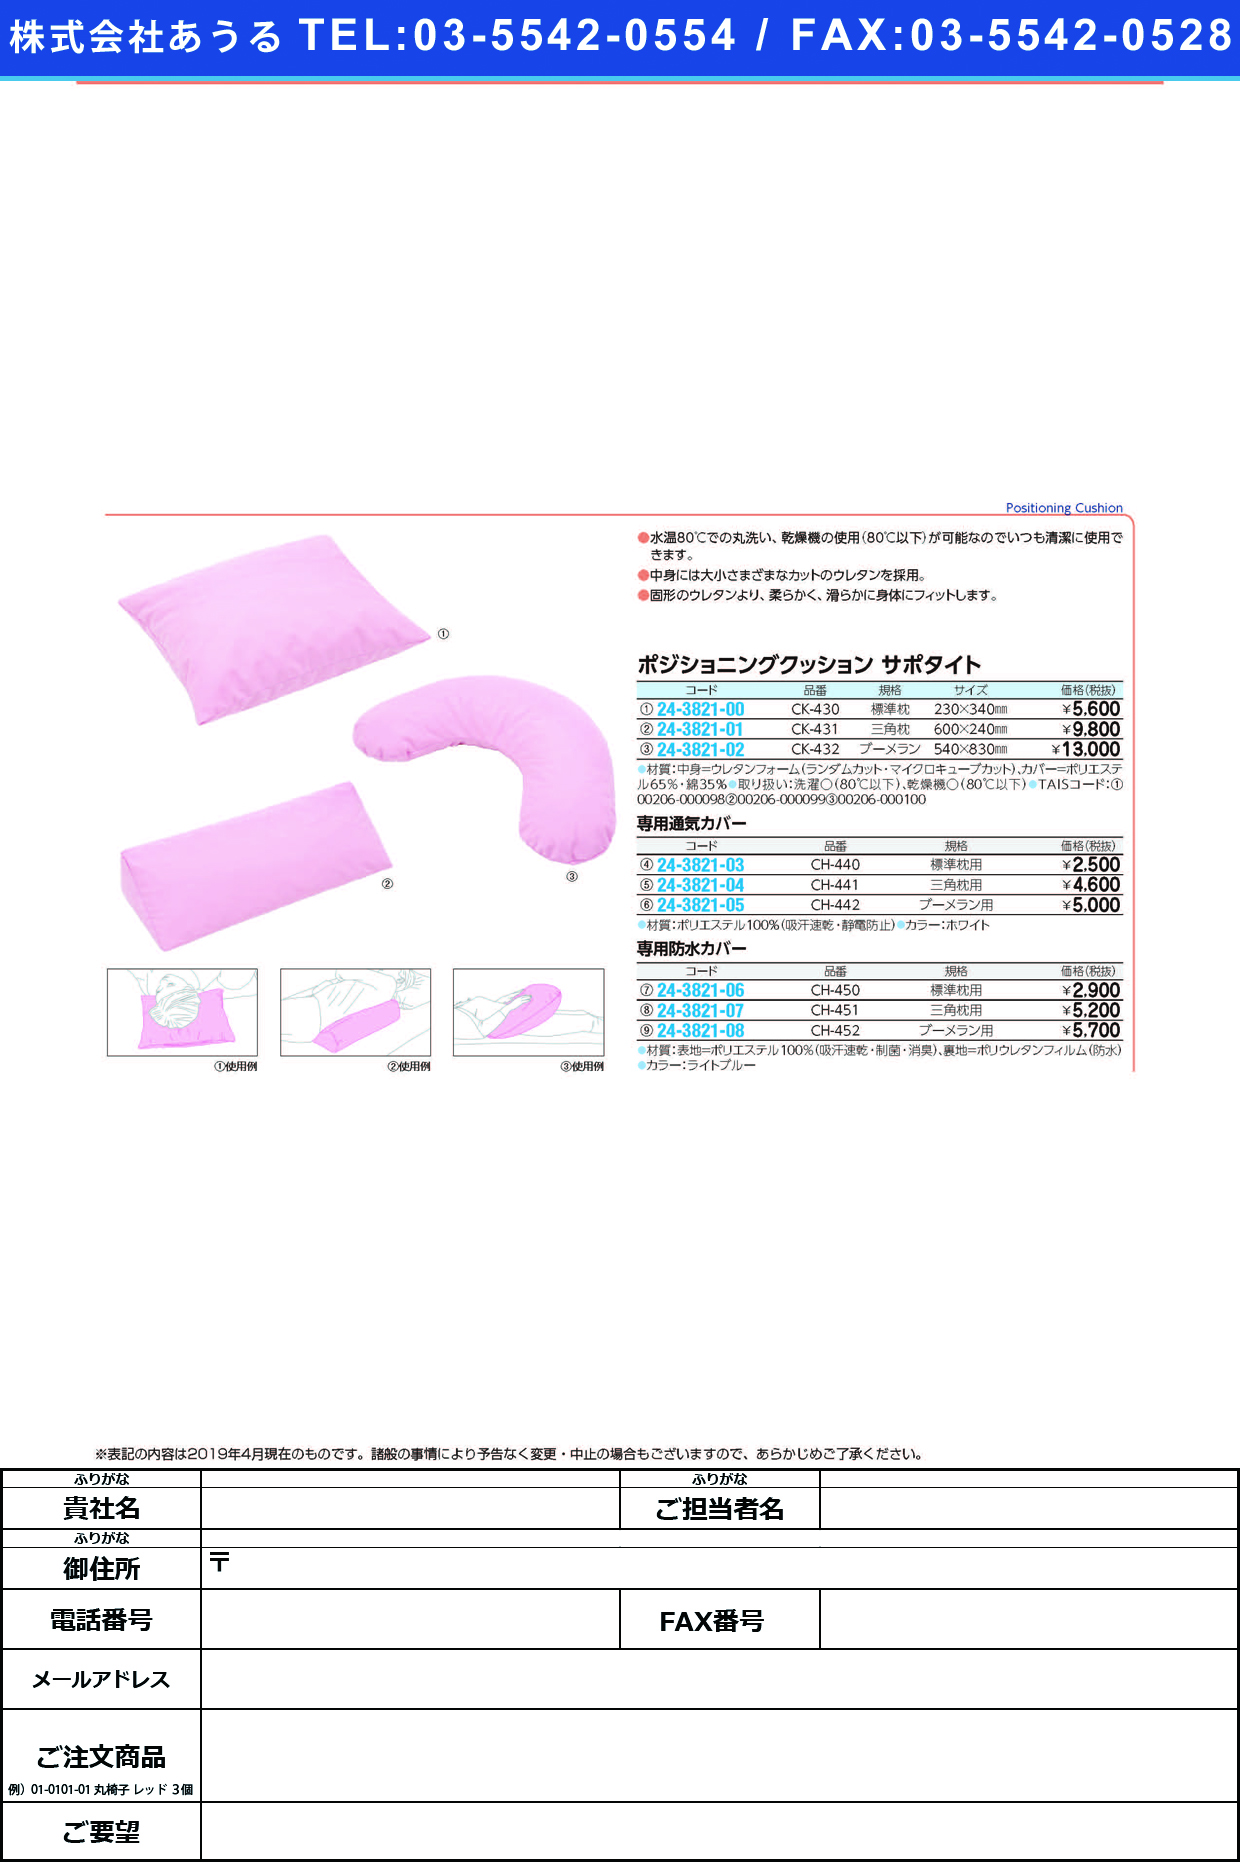 (24-3821-01)ポジショニングクッションサポタイト CK-431(ｻﾝｶｸﾏｸﾗ) ﾎﾟｼﾞｼｮﾆﾝｸﾞｸｯｼｮﾝｻﾎﾟﾀｲ(ケープ)【1個単位】【2019年カタログ商品】